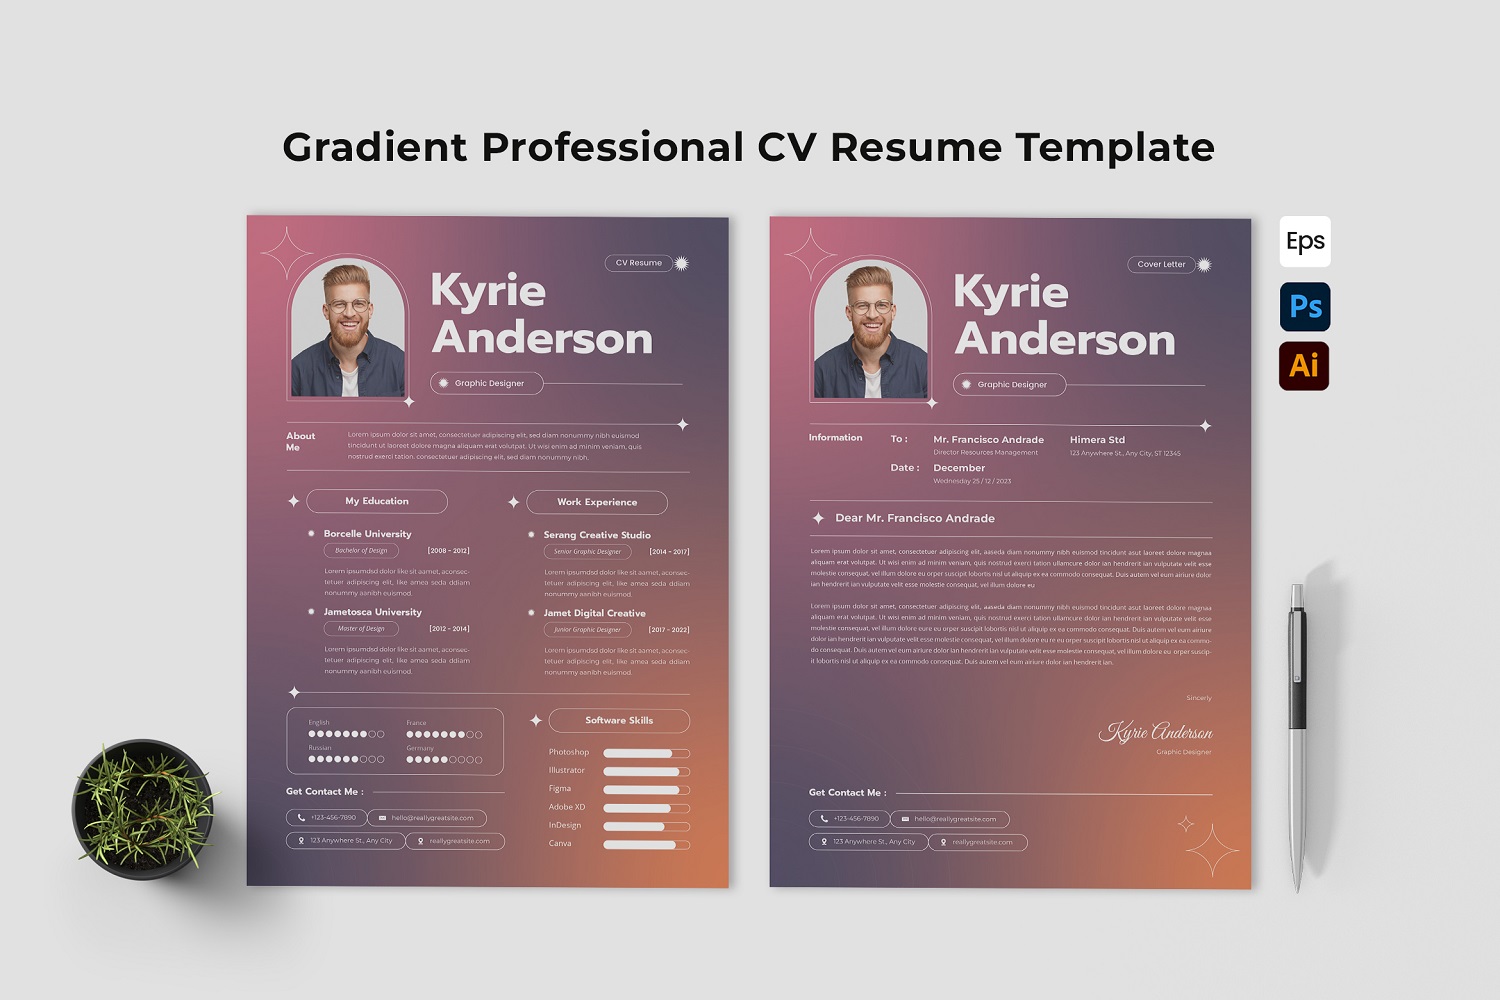 Gradient Professional CV Resume